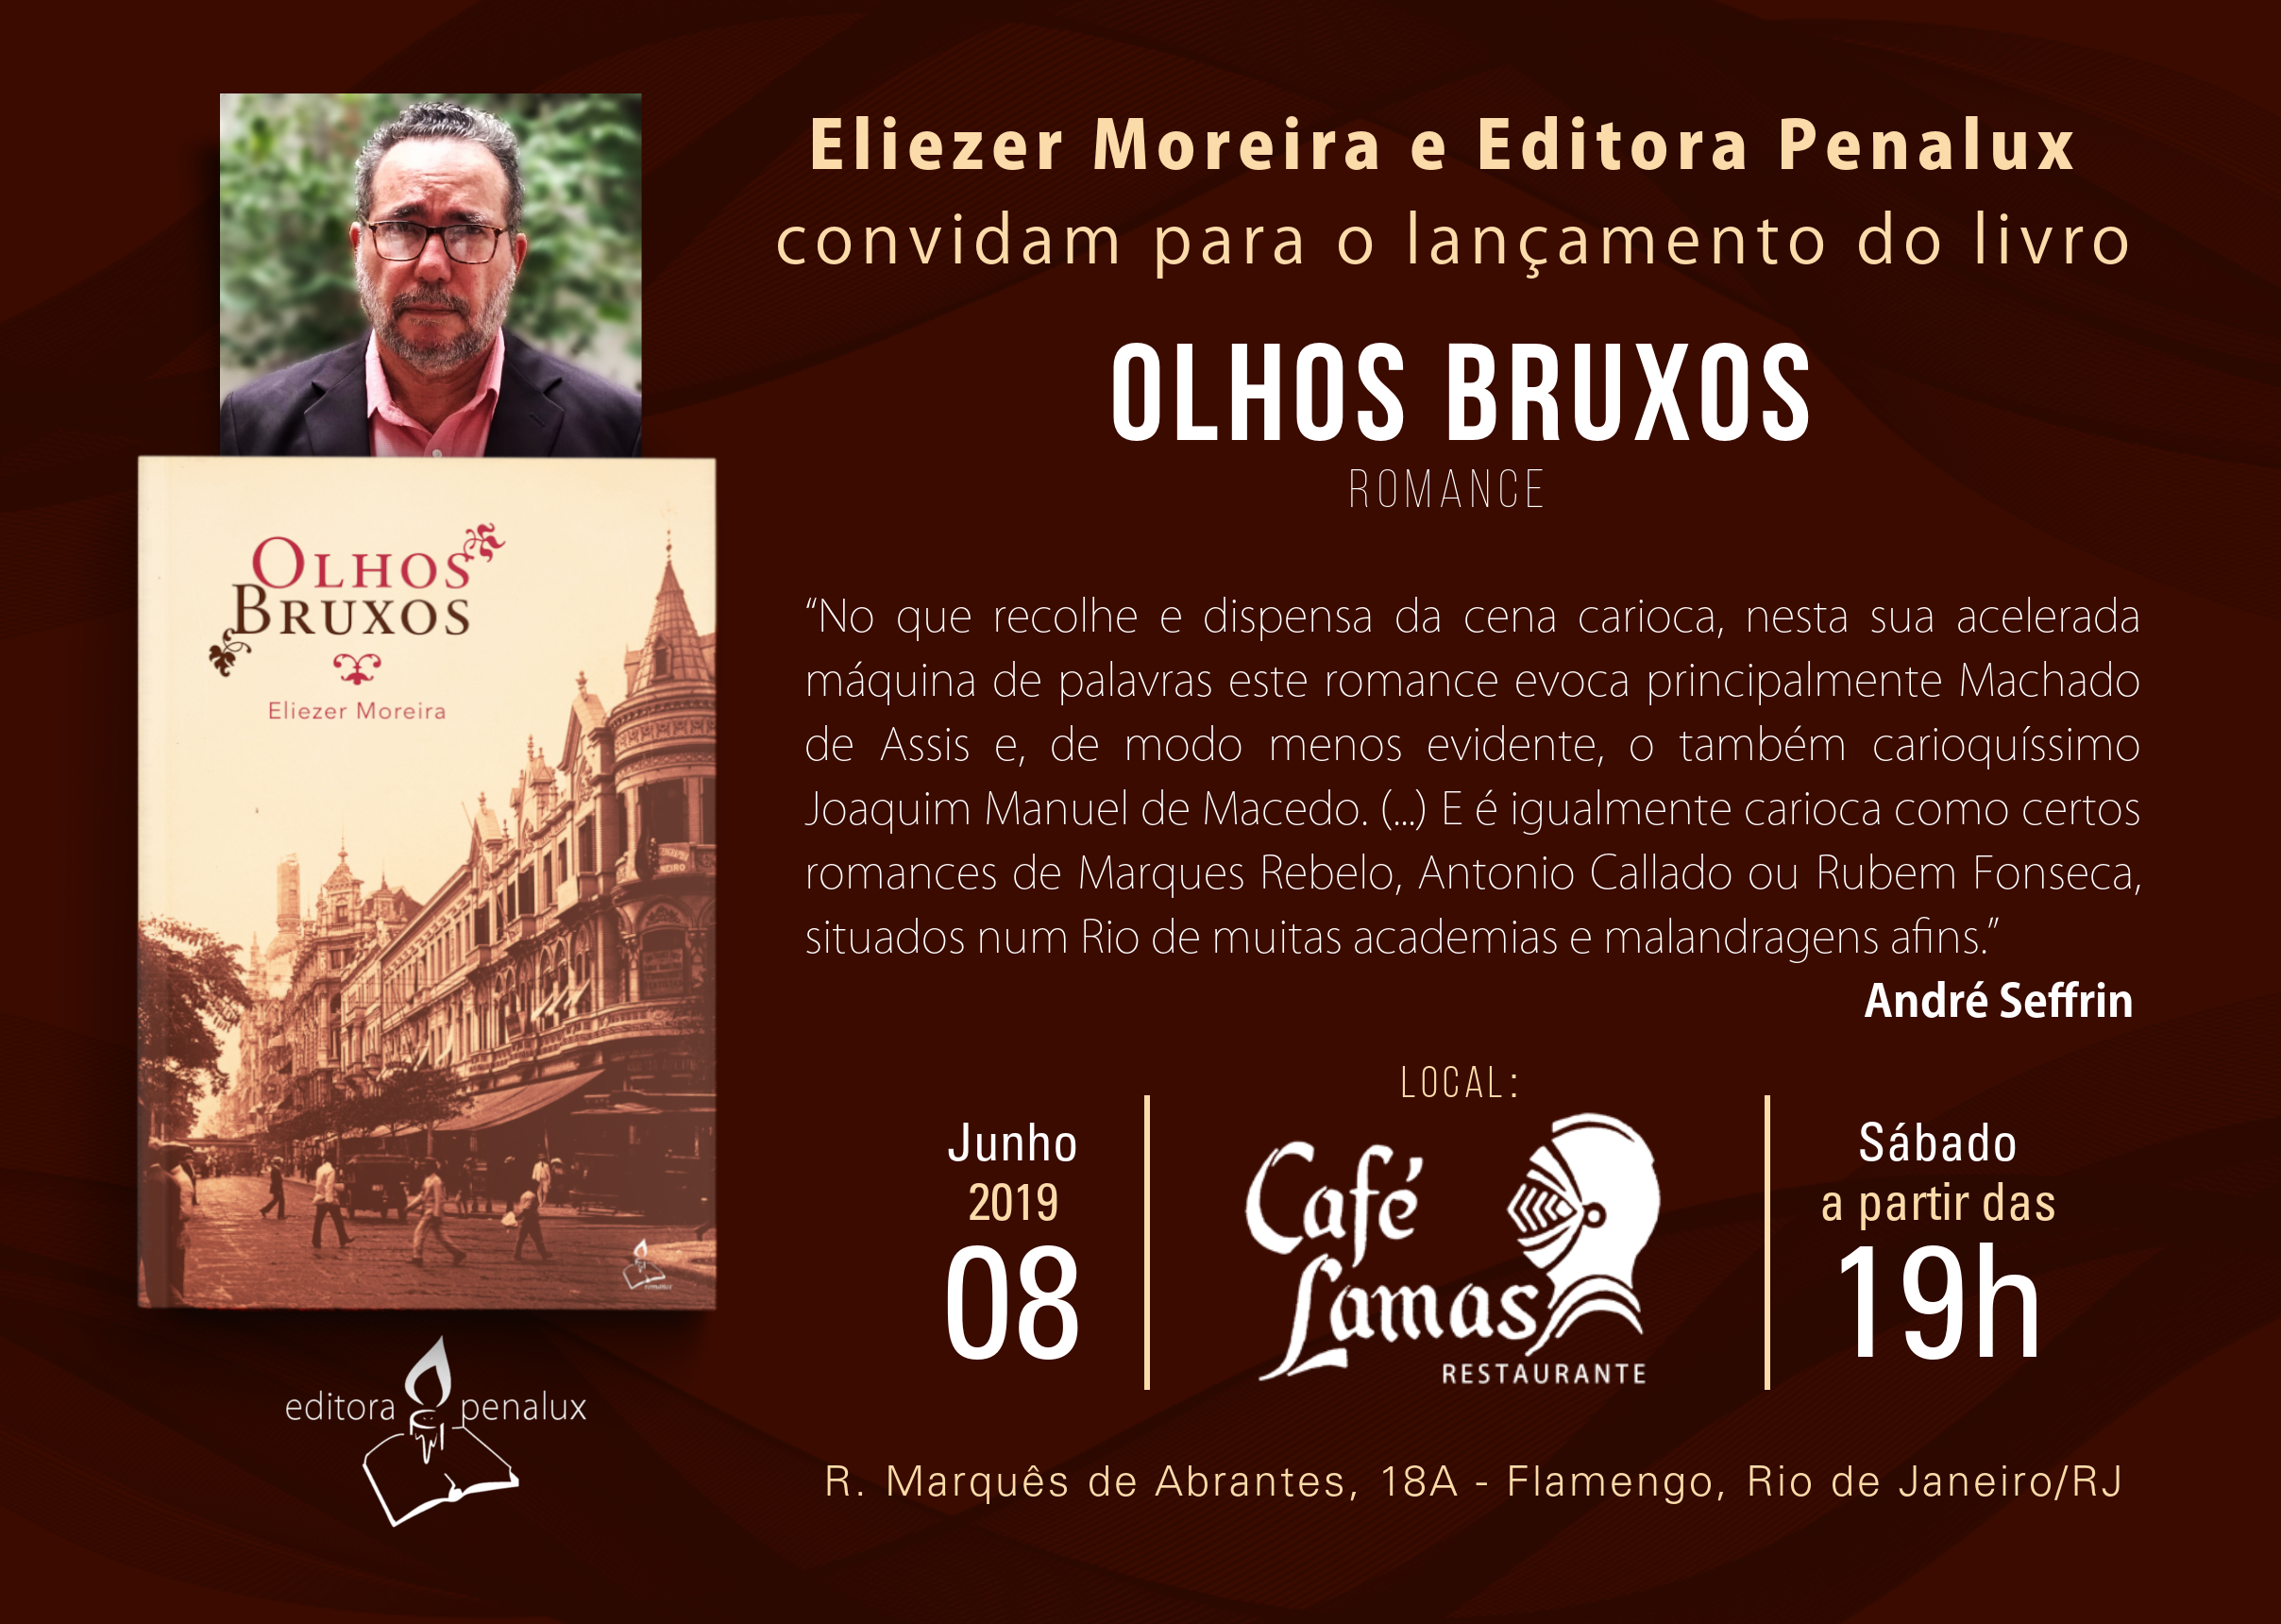 60863684 376891209623589 4386009255371603968 n - Dia 08, no Rio, o escritor Eliezer Moreira lança "Olhos bruxos" seu mais recente romance